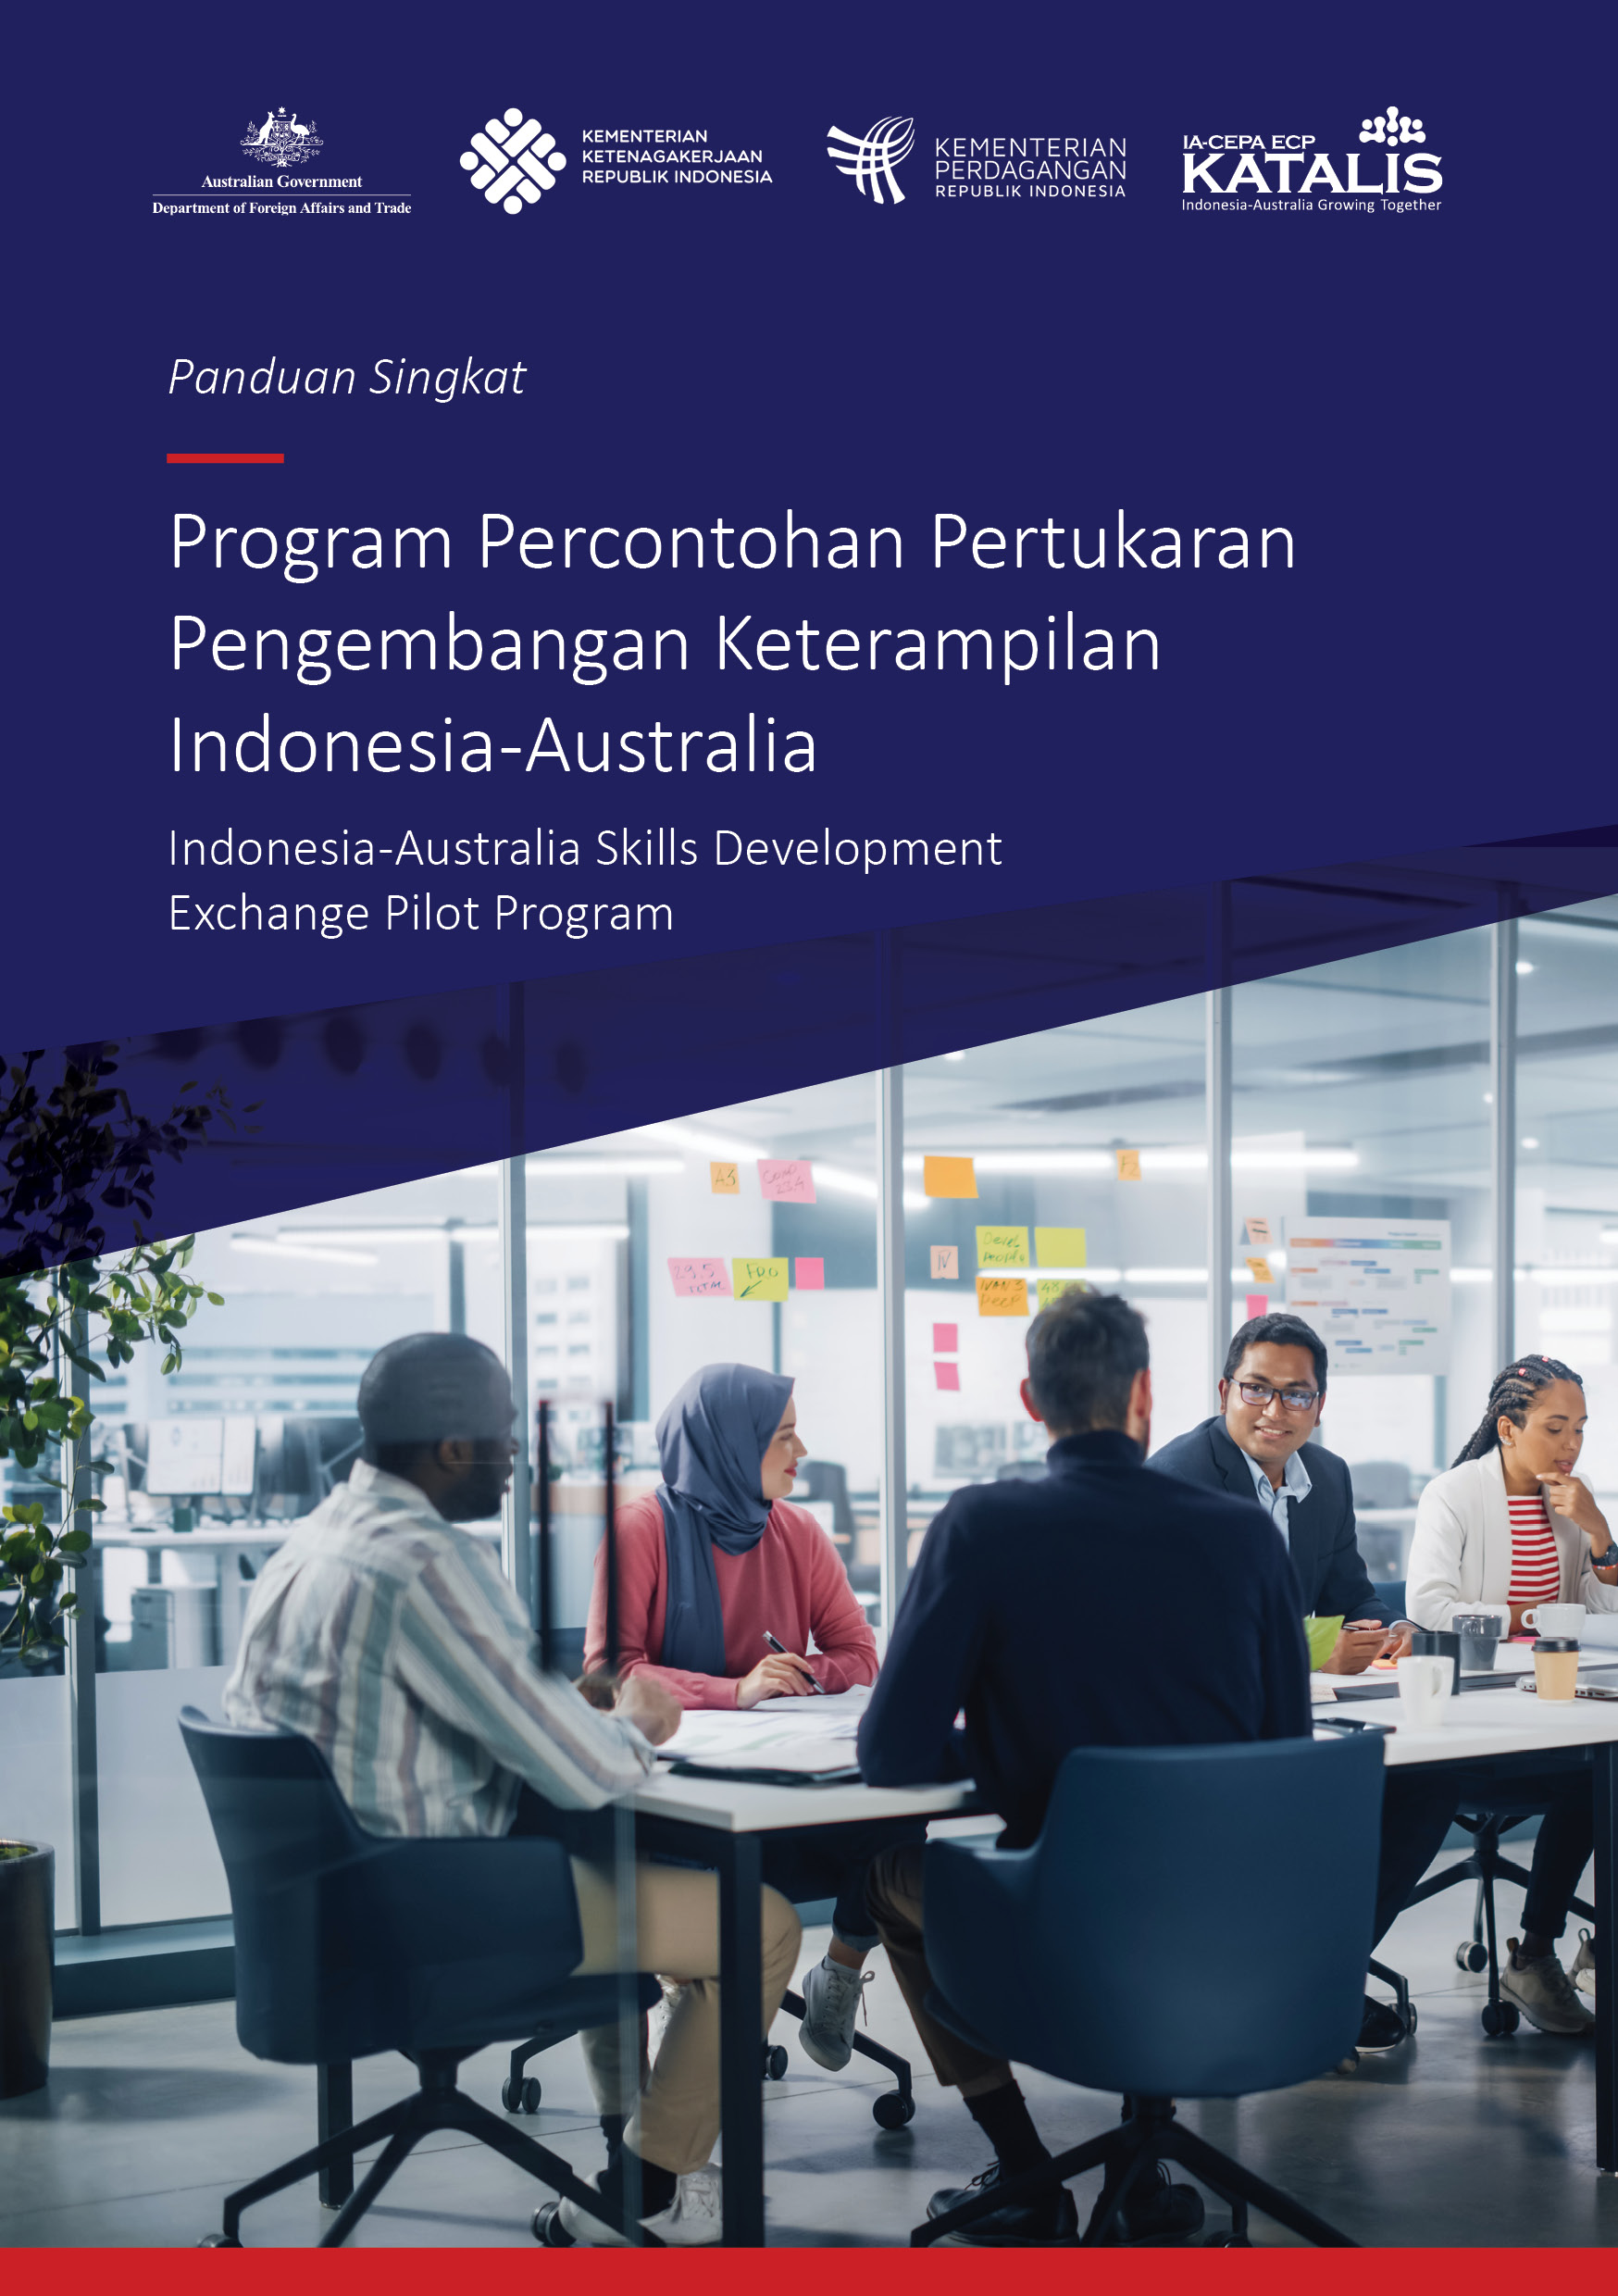 Program Percontohan Pertukaran Pengembangan Keterampilan Indonesia Australia